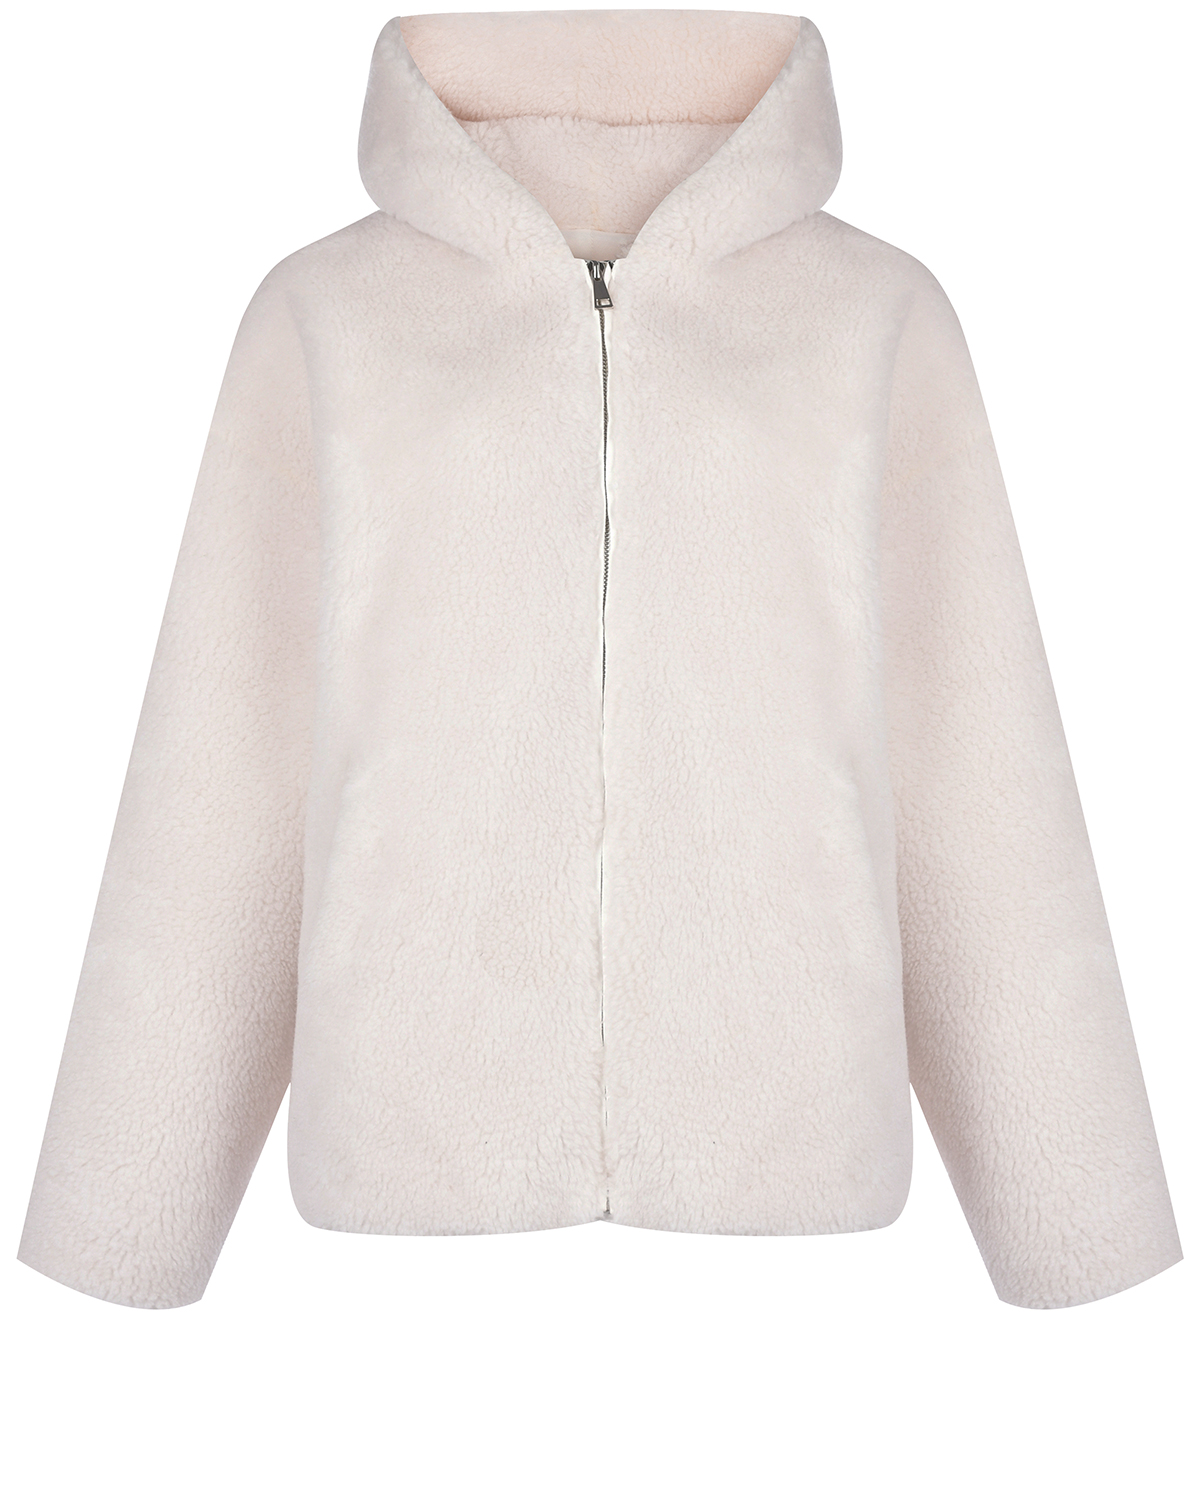 Куртка молочного цвета из эко-меха Forte dei Marmi Couture, размер 40